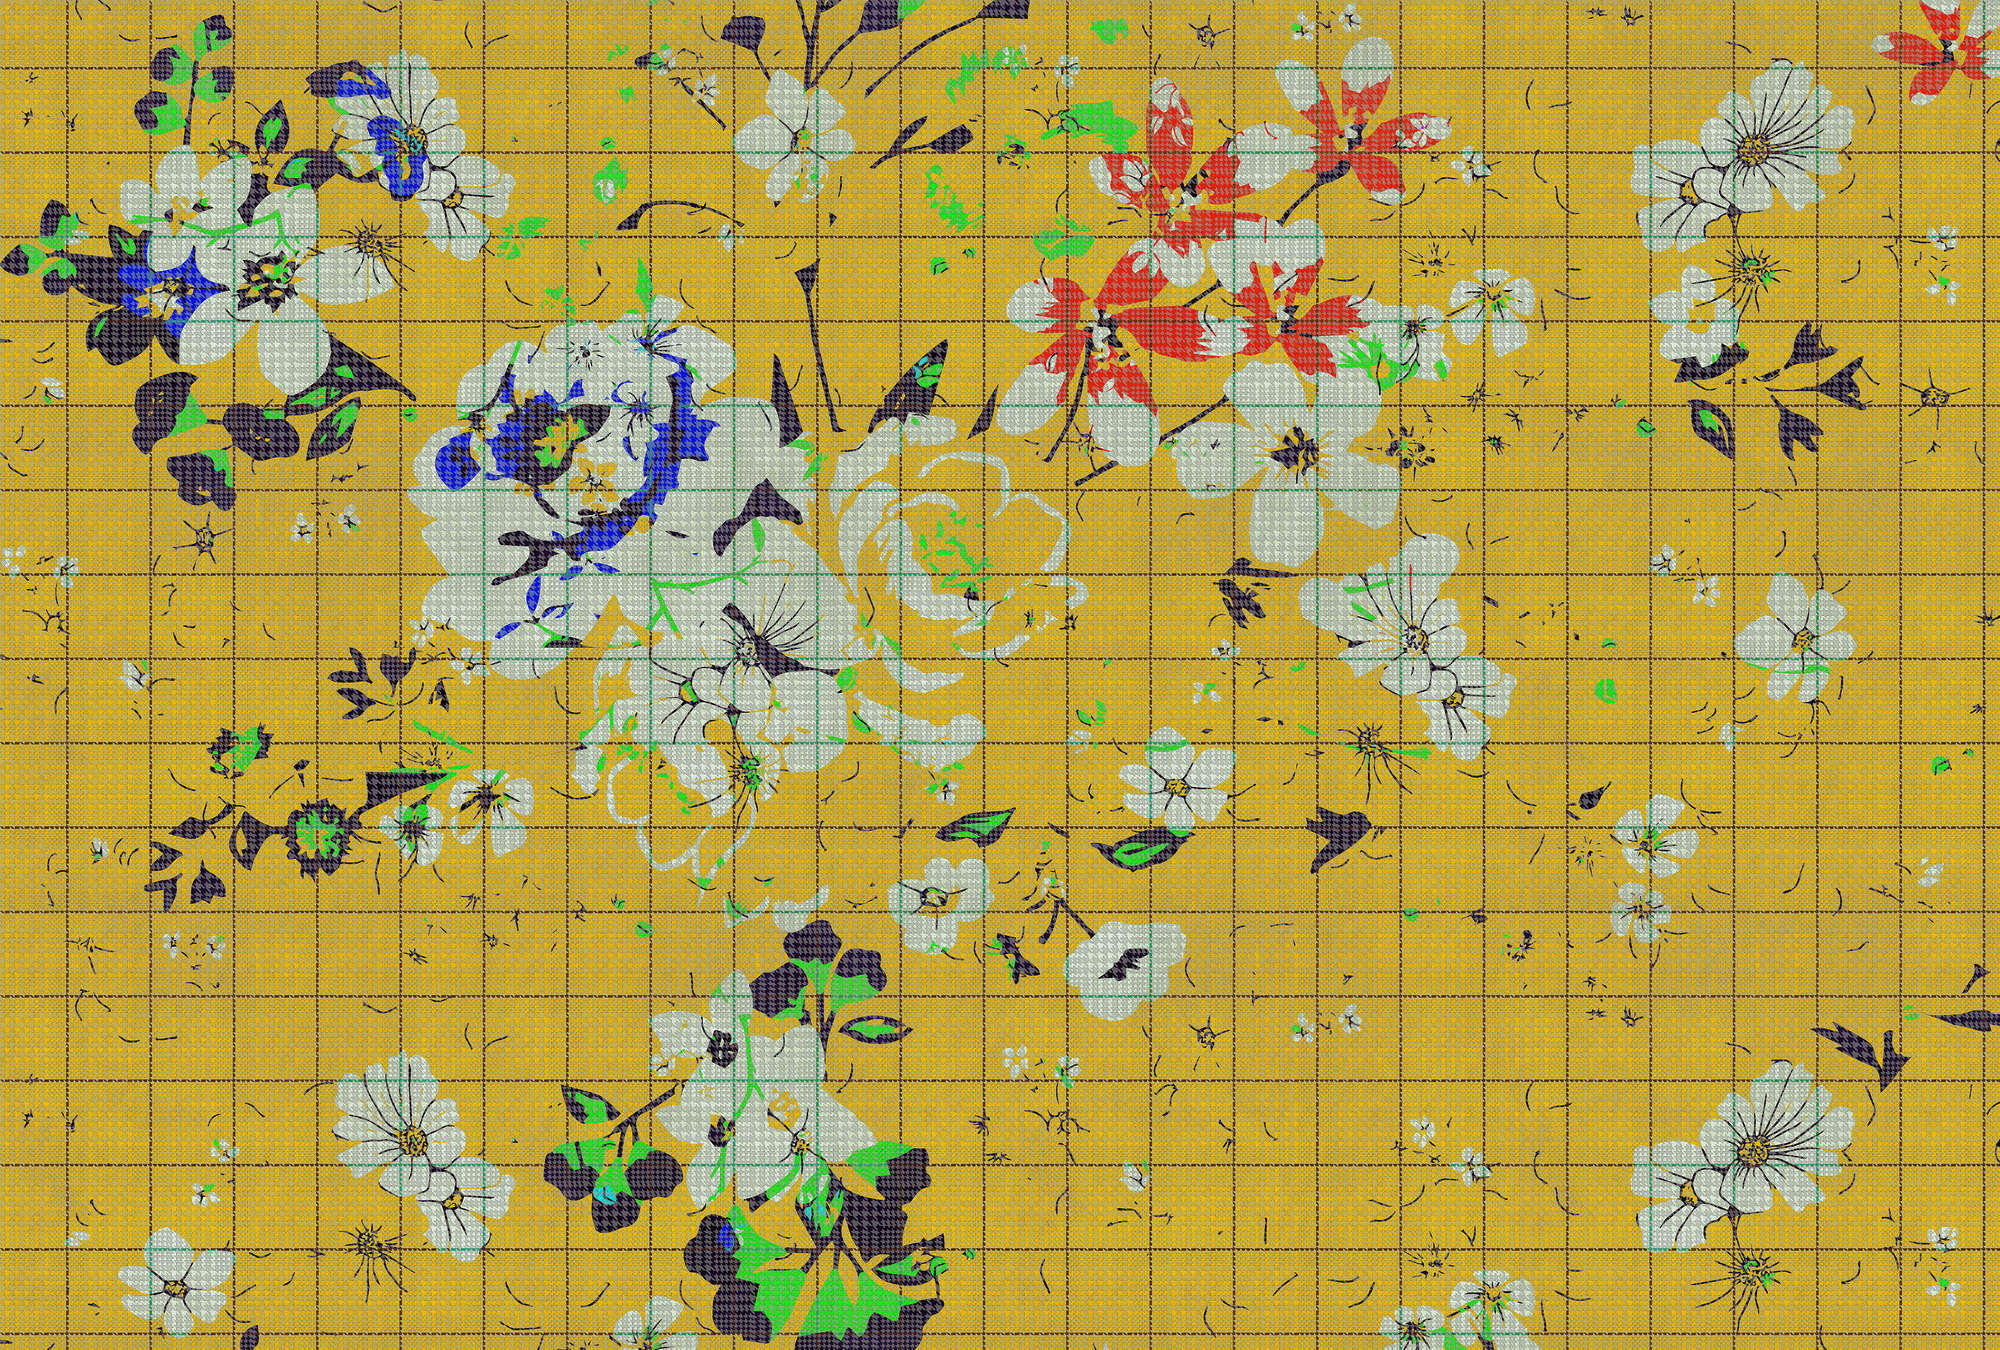             Fiore a quadri 1 - Fotomurali a mosaico di fiori colorati con aspetto a scacchiera - Blu, Giallo | Pile liscio opaco
        